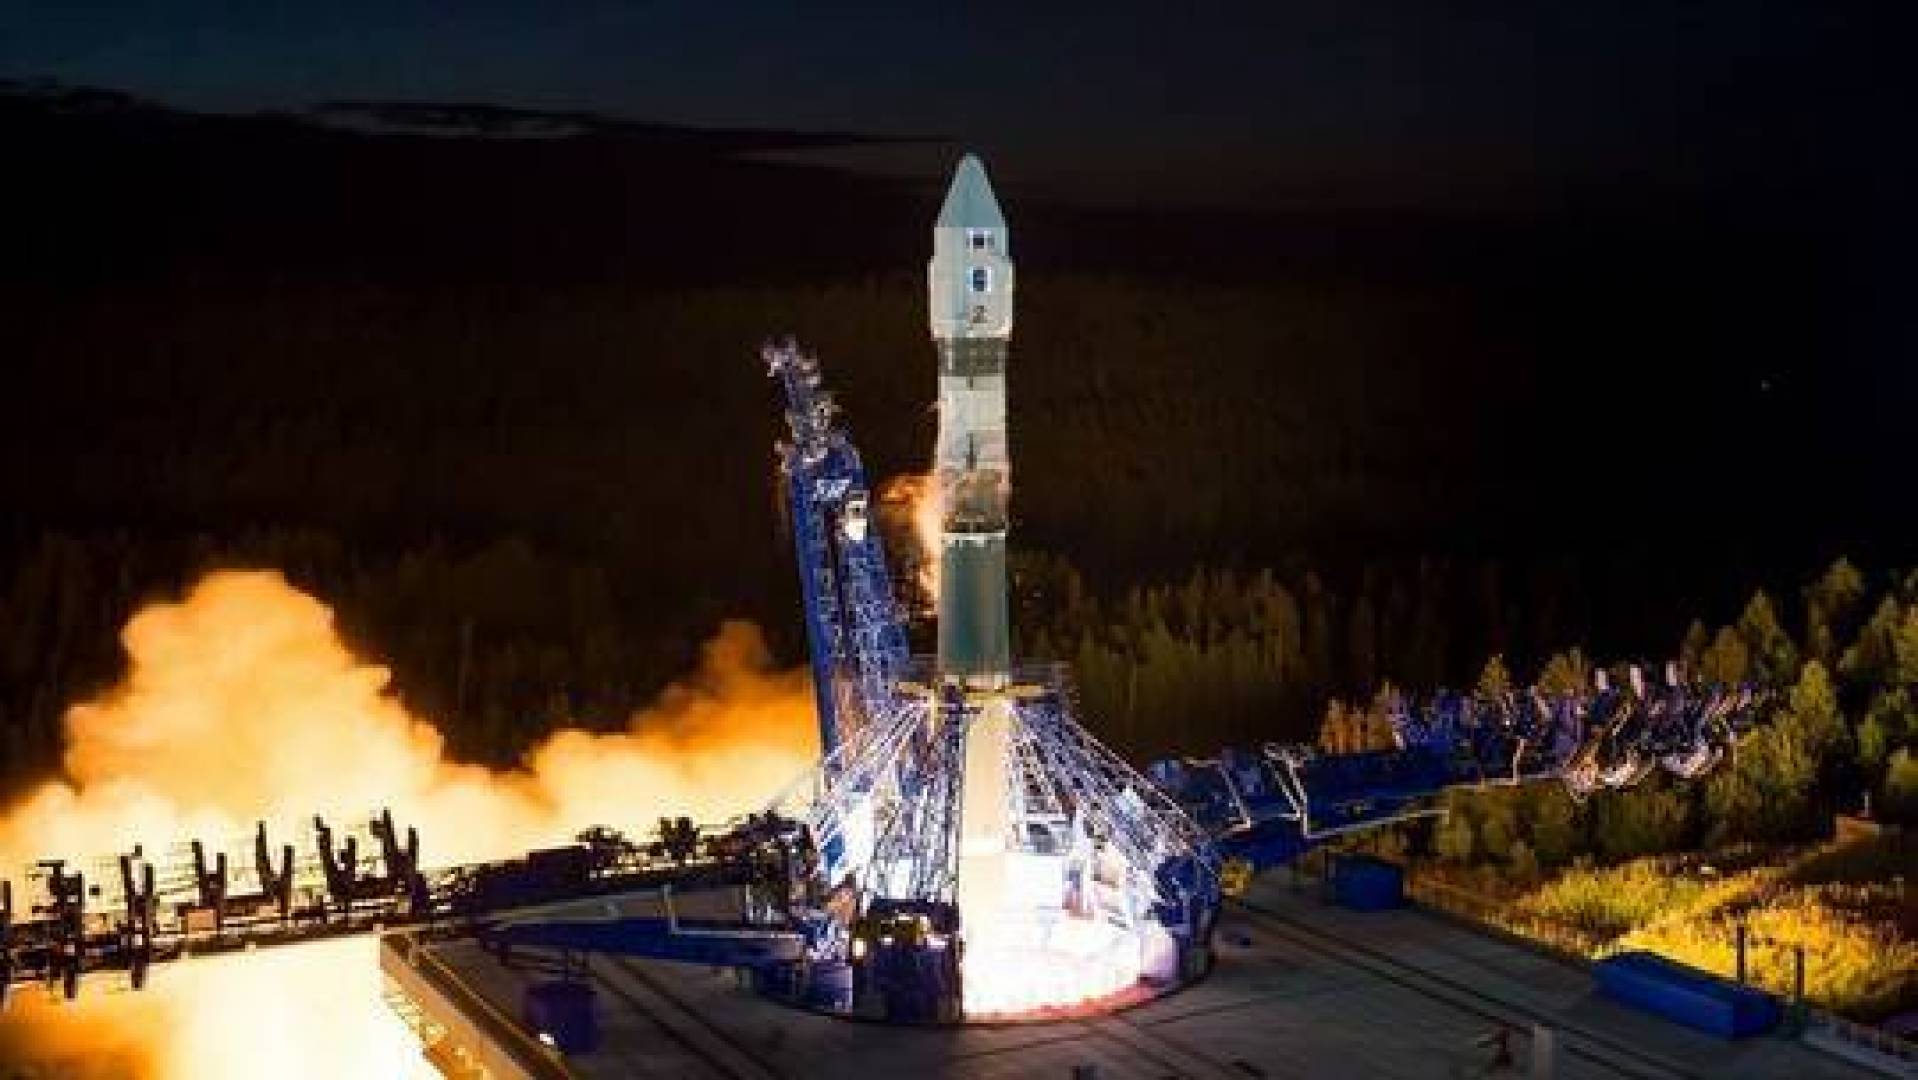 روسيا ستطلق أول صاروخ روسي عامل بالنفتيل الخريف المقبل